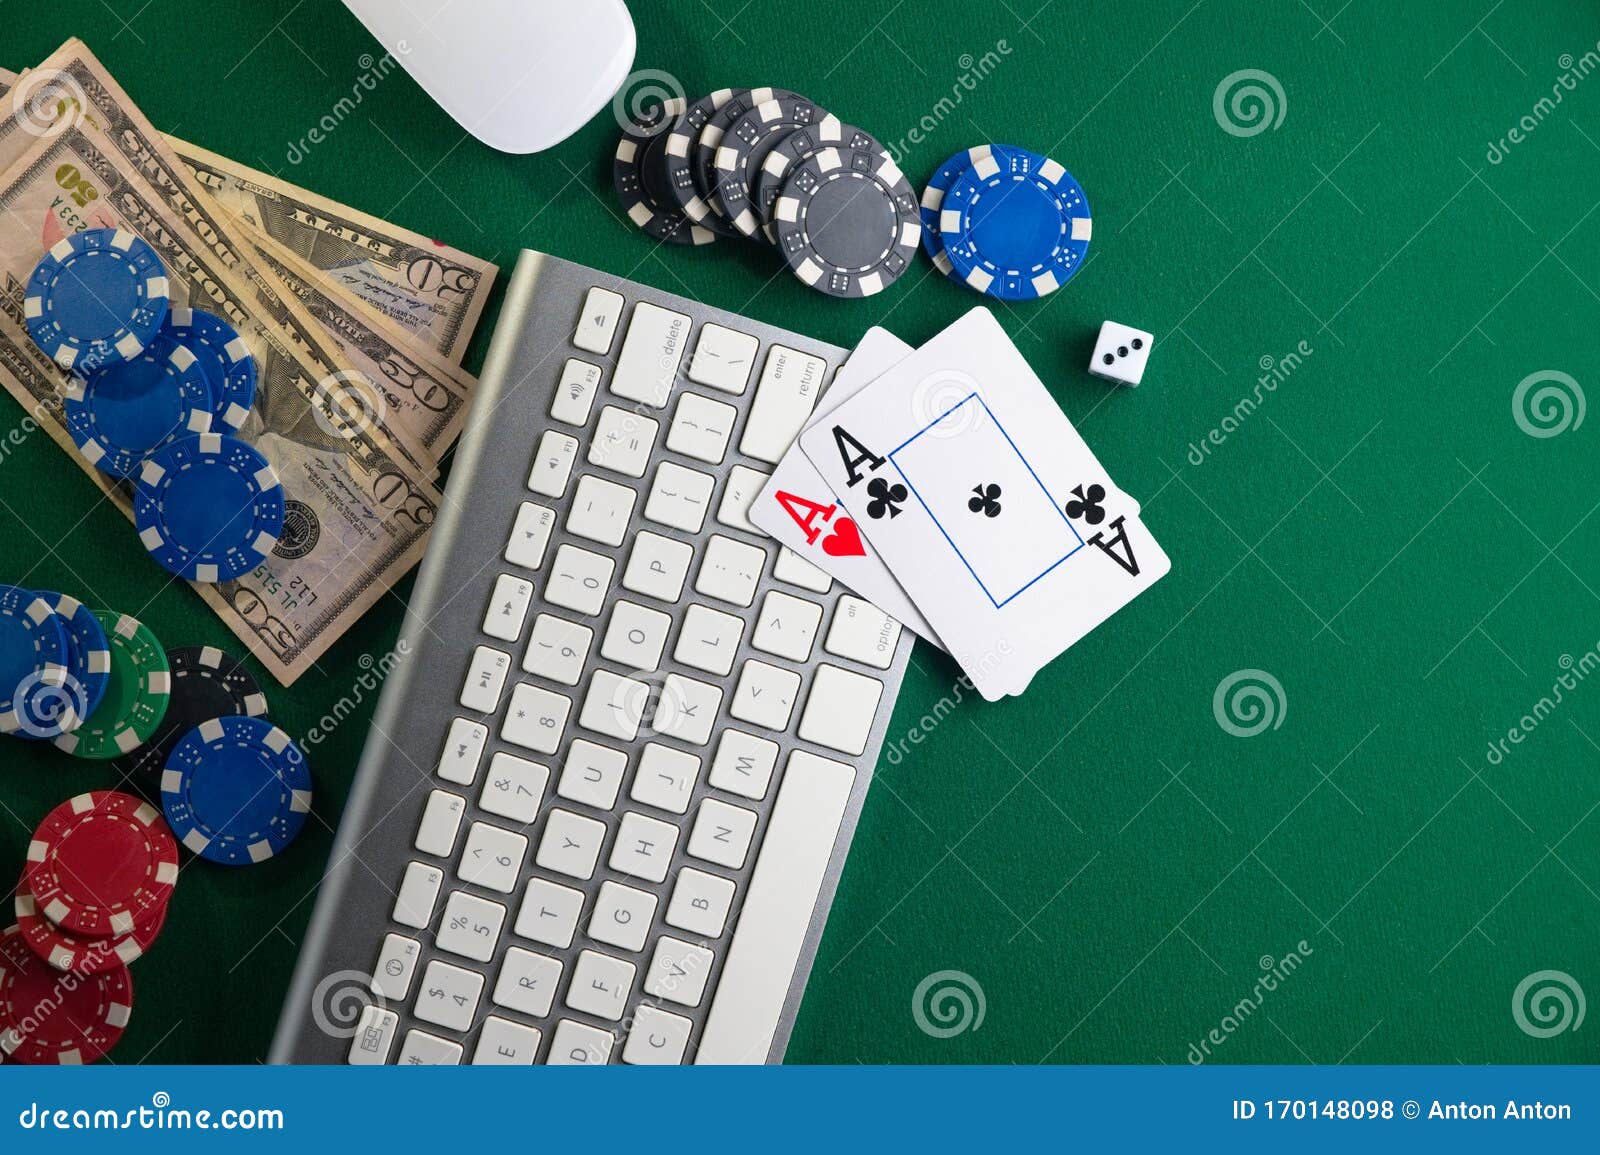 play casino gumatjcorporation.com - How To Be More Productive?